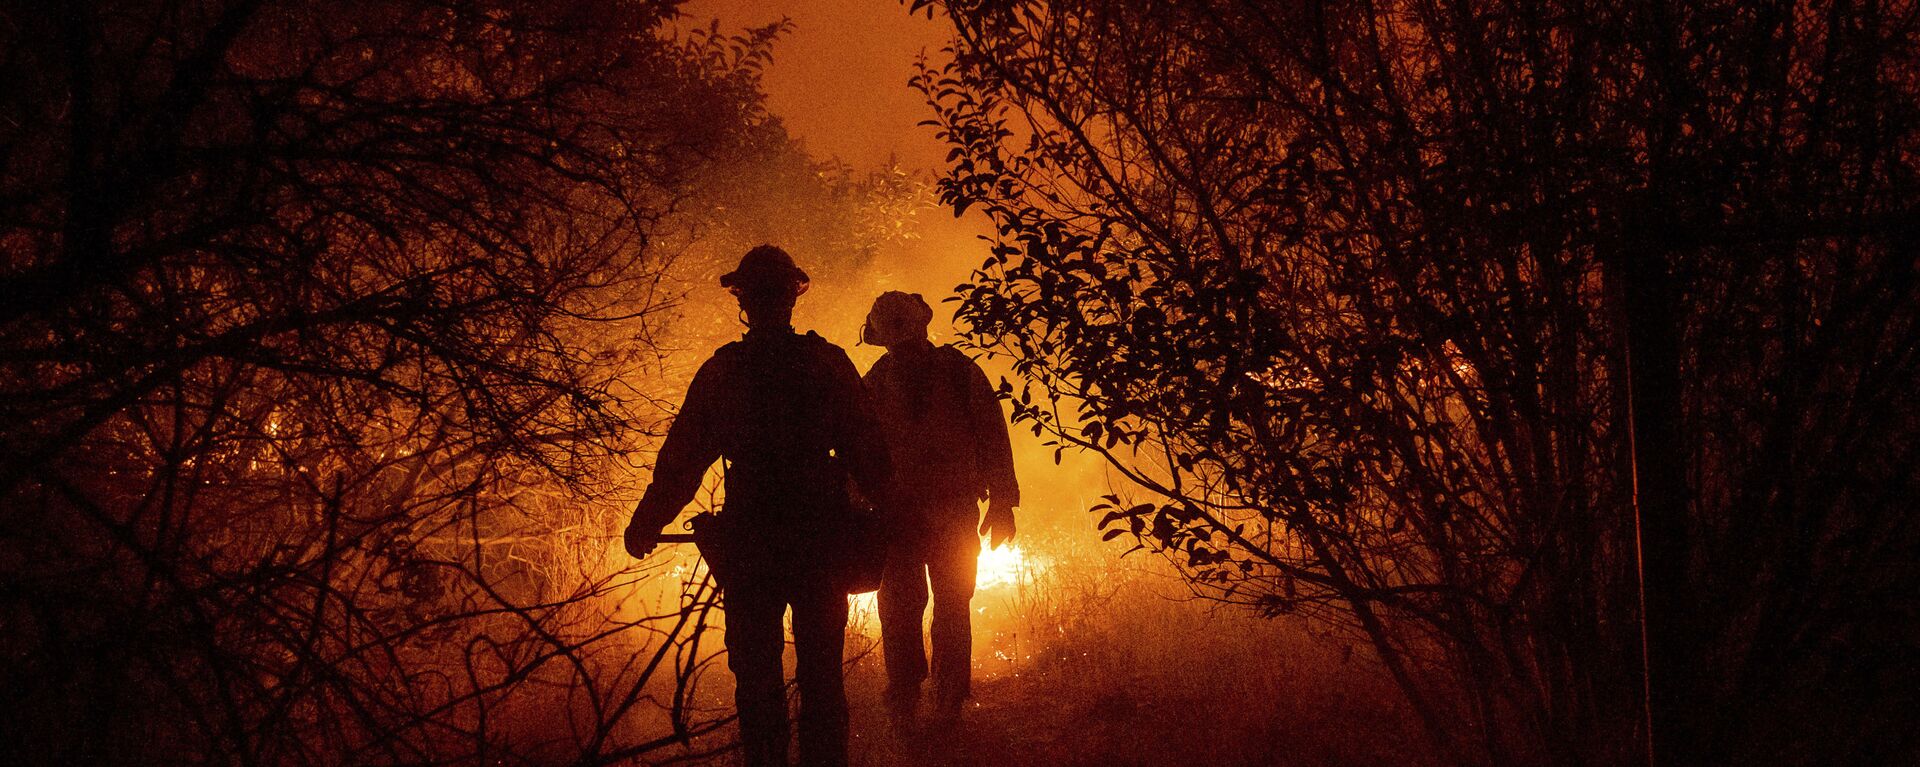 Пожарные борются с лесным пожаром в округе Ориндж, Калифорния - Sputnik Таджикистан, 1920, 16.12.2021